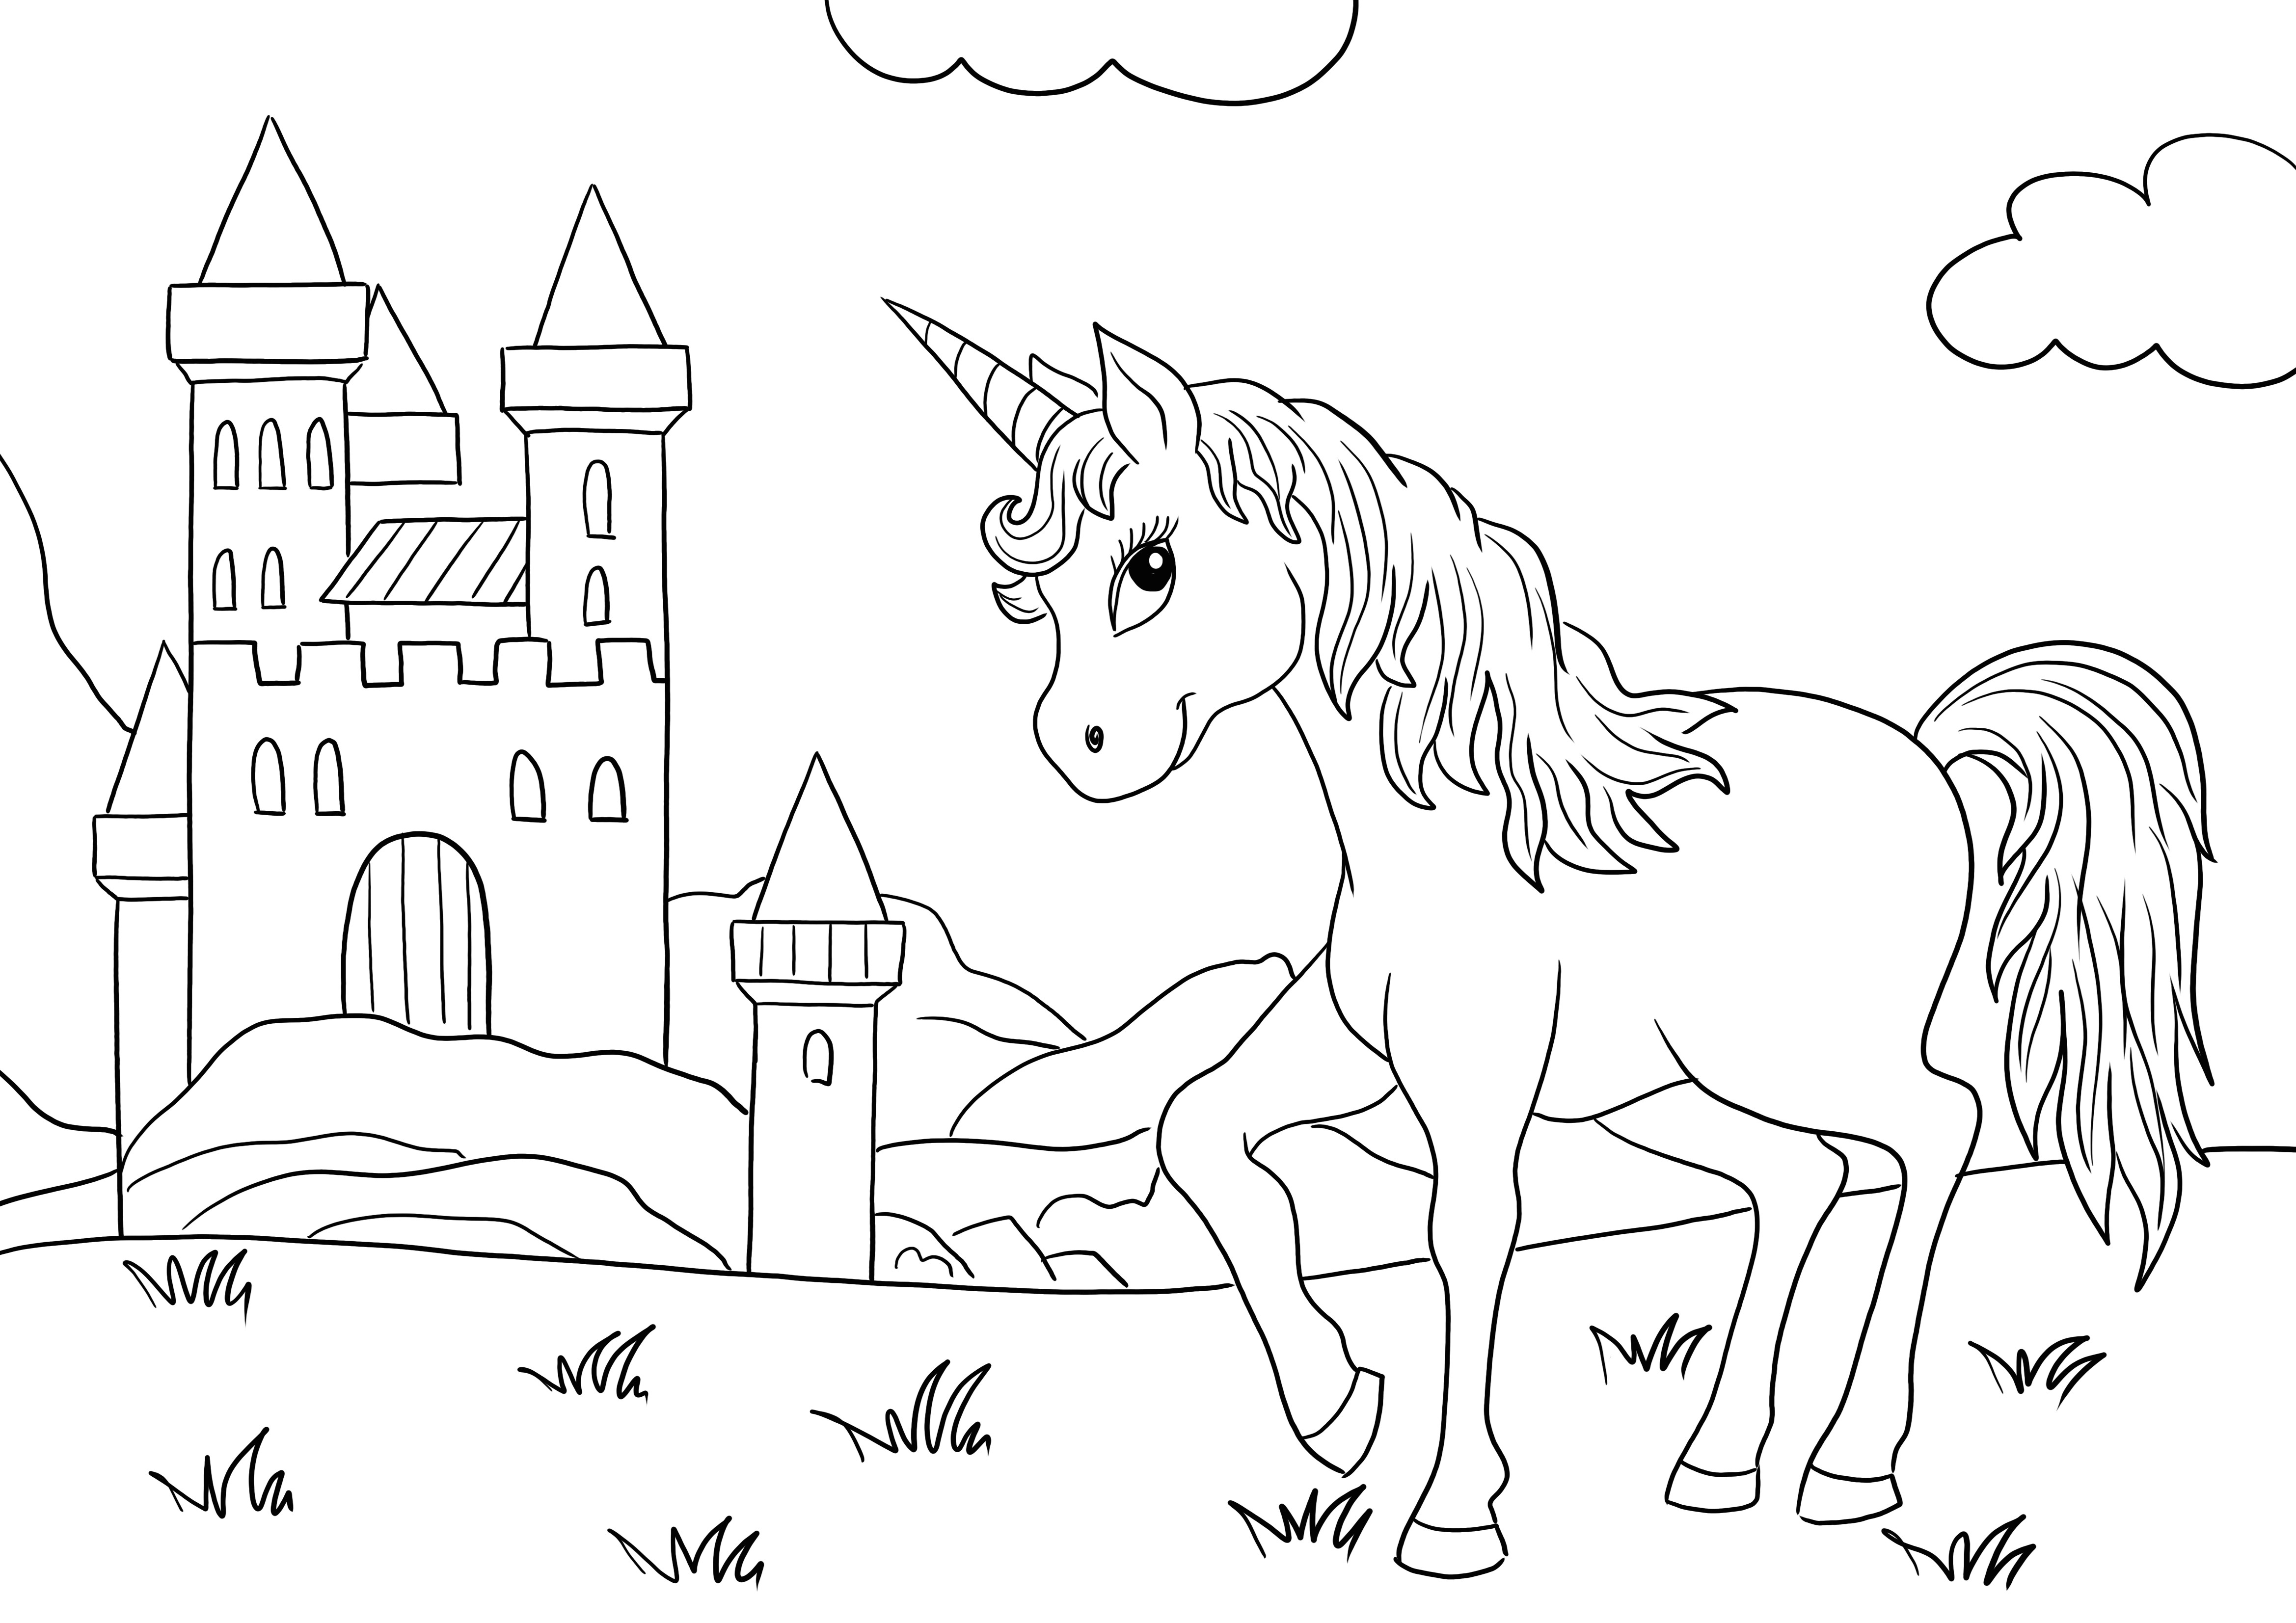 Majestic Unicorn と Castle は、無料で印刷および着色する準備ができています